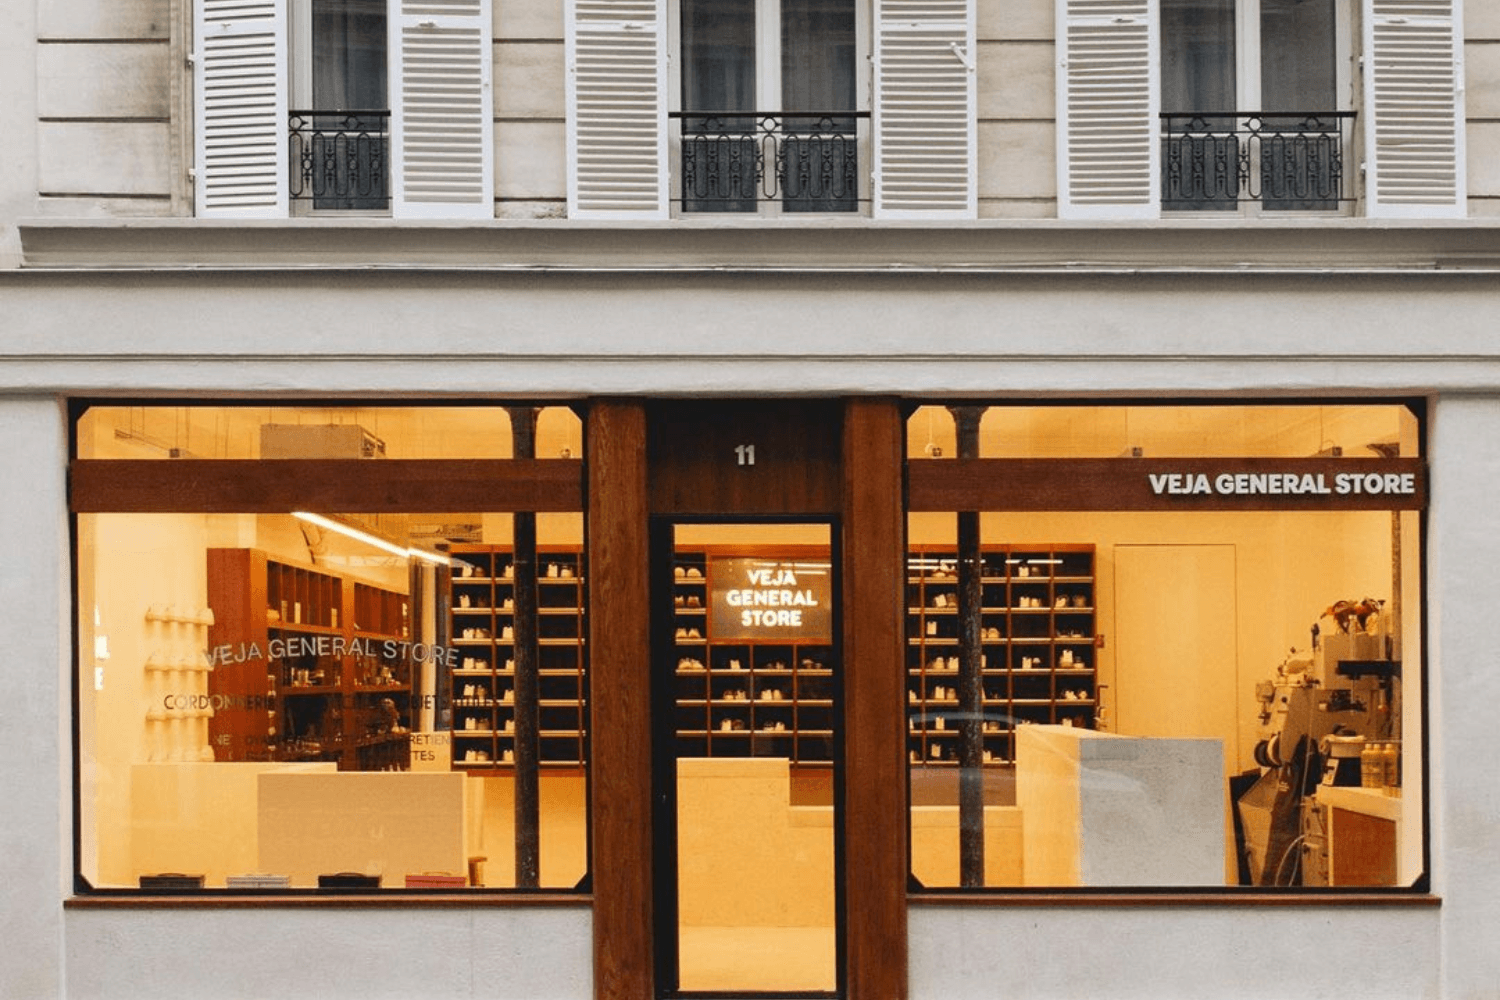 VEJA opent General Store in Parijs en biedt reparatie service aan